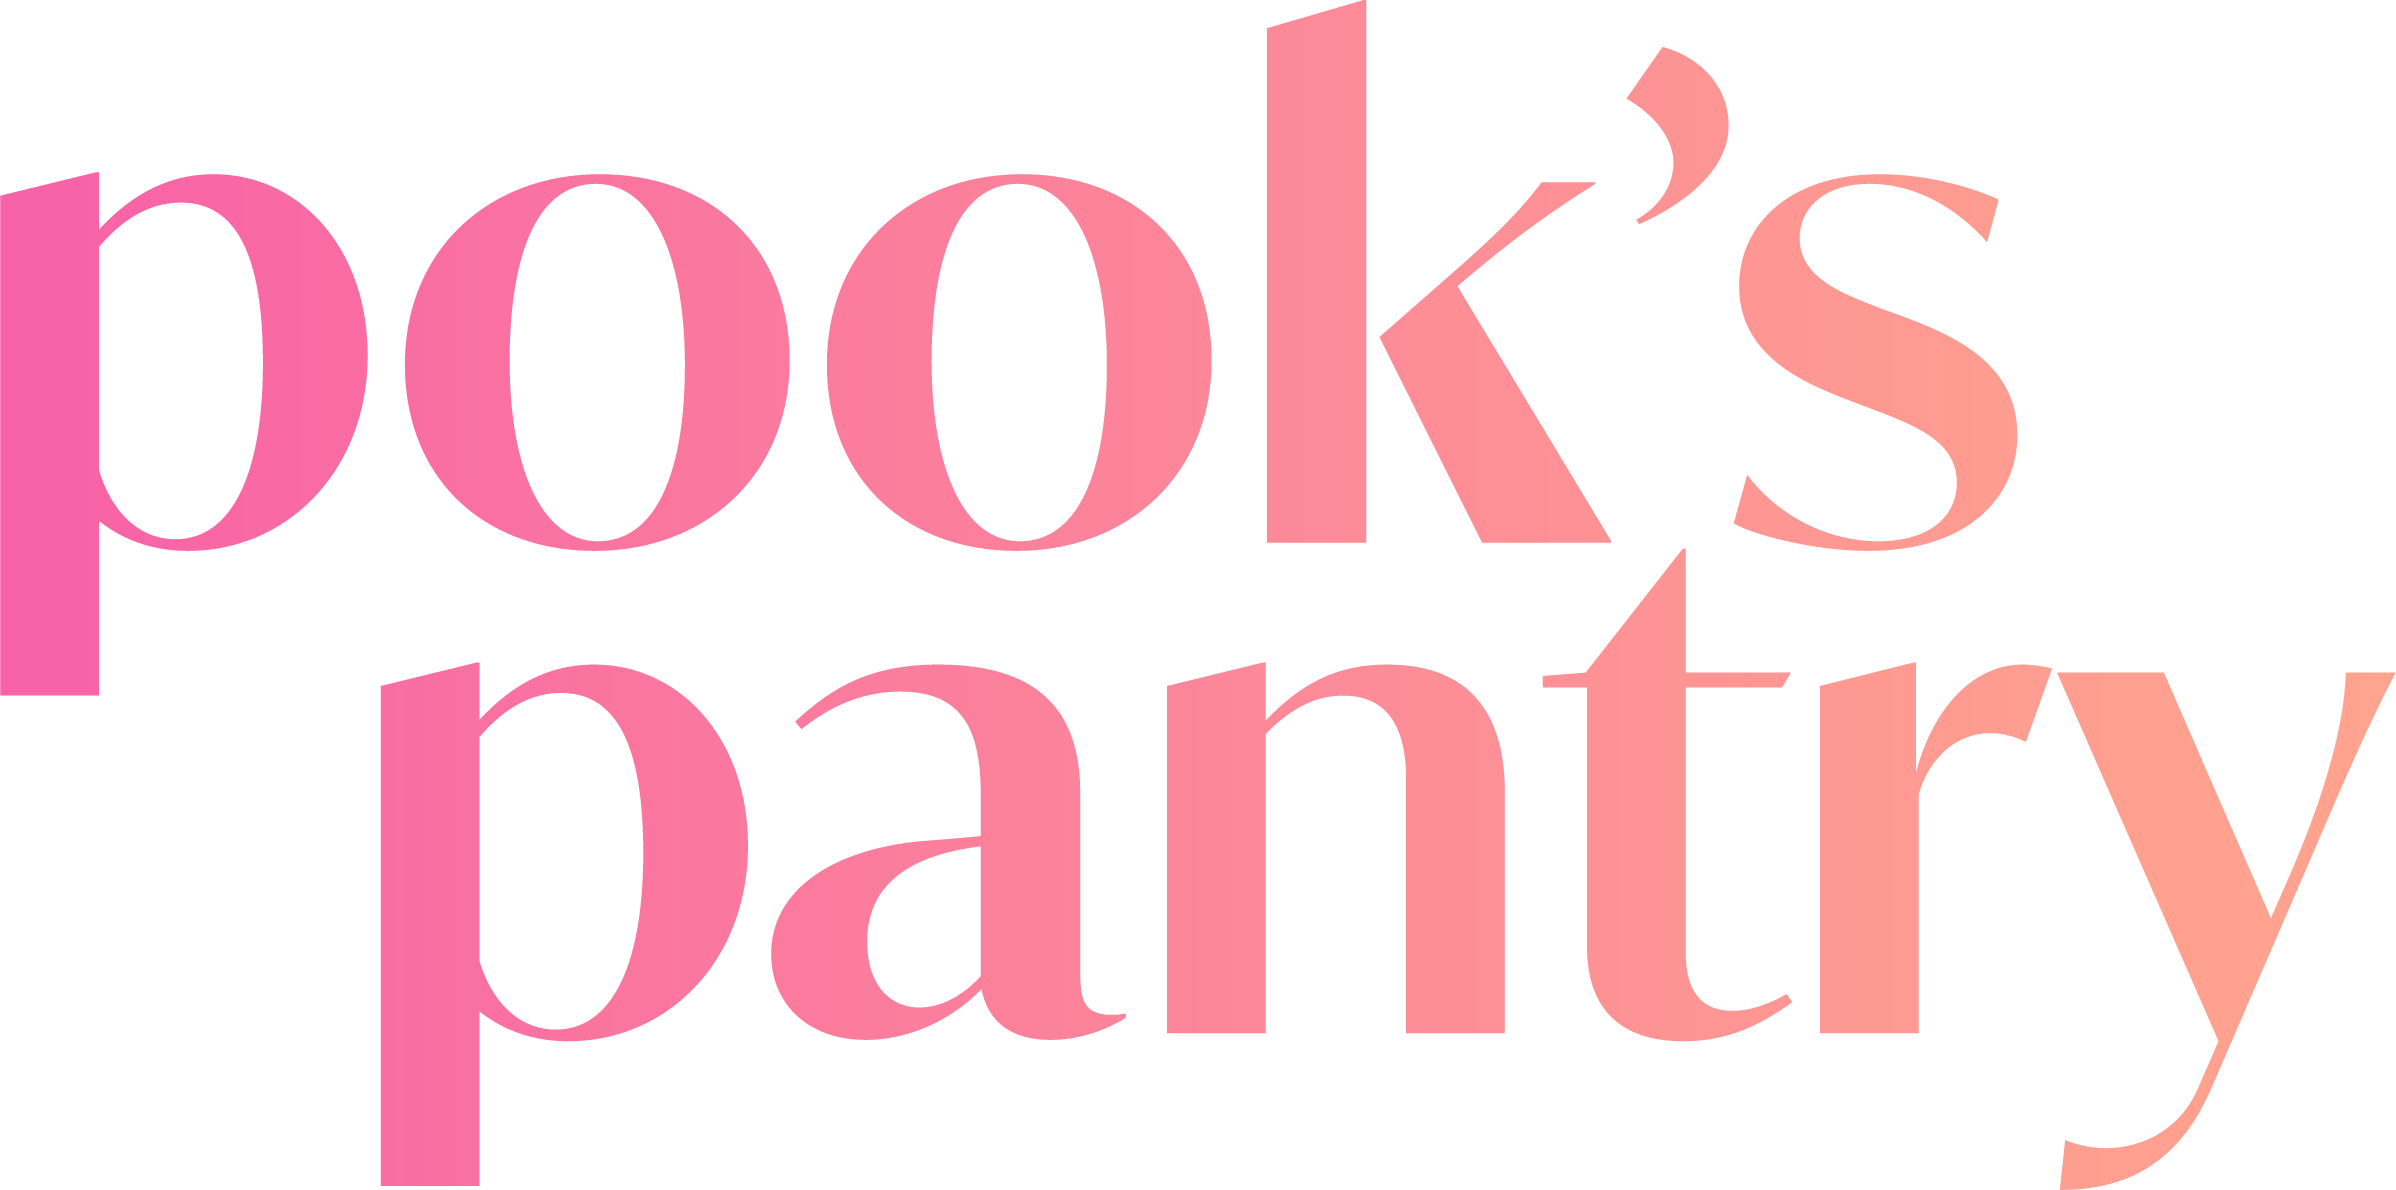 Pook's Pantry Recipe Blog